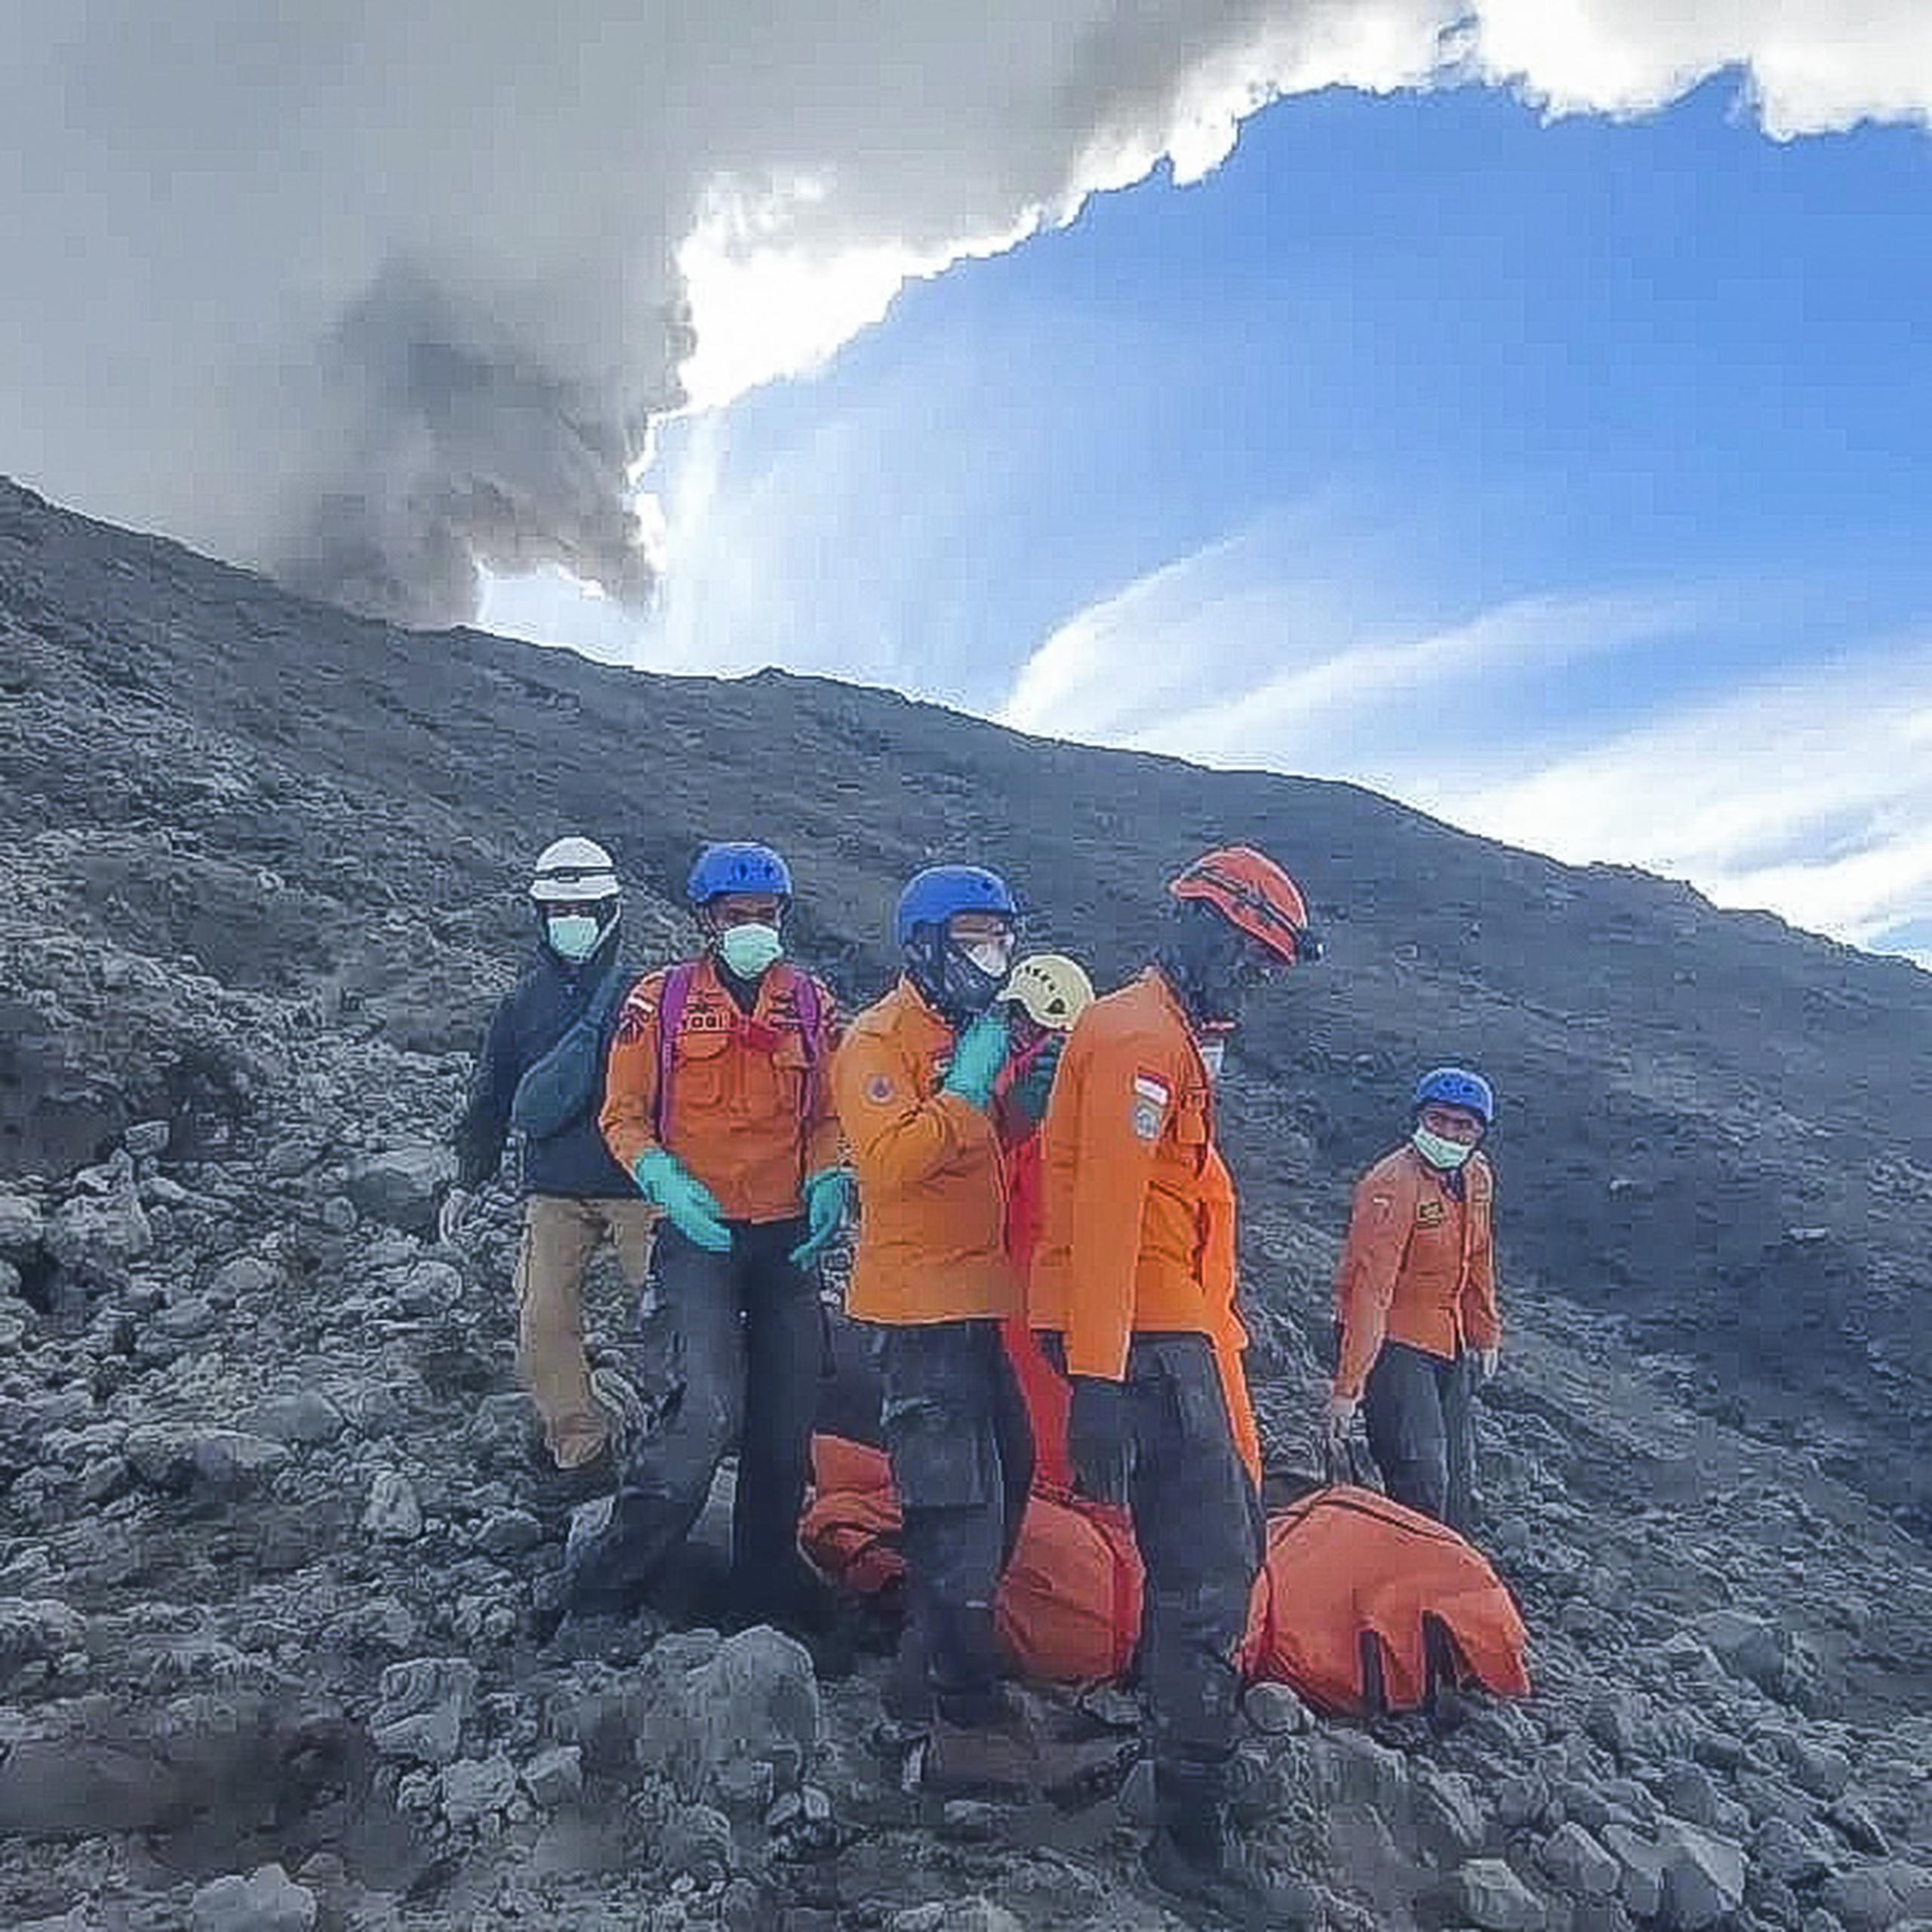 Una fotografía proporcionada por la agencia de rescate de Indonesia (BASARNAS) muestra a los rescatistas preparándose para evacuar el cuerpo de un excursionista muerto en la erupción del Monte Marapi en Agam, Sumatra Occidental, Indonesia, el 5 de diciembre de 2023. Las operaciones de búsqueda y rescate continúan después de la erupción. Al menos 13 excursionistas fueron encontrados muertos y otros 10 desaparecieron después de la erupción del volcán Marapi el 3 de diciembre de 2023, según la agencia de rescate de Indonesia. (EFE/EPA/BASARNAS/FOLLETO MEJOR CALIDAD DISPONIBLE FOLLETO SÓLO PARA USO EDITORIAL/NO VENTAS FOLLETO SÓLO PARA USO EDITORIAL/NO VENTAS)